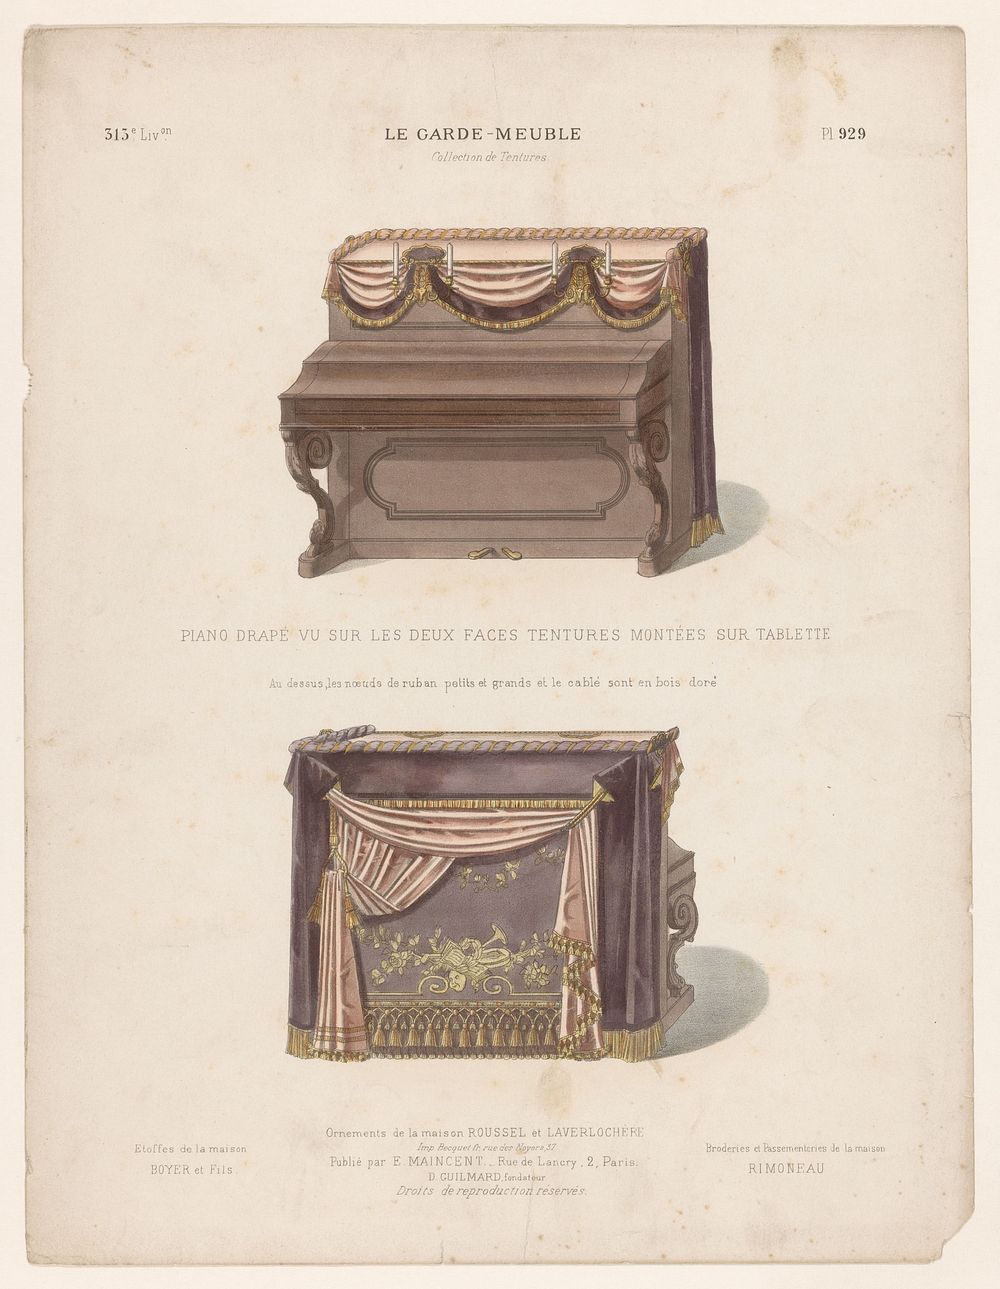 Piano met draperieën (c. 1885 - c. 1895) by Quéton, Eugène Maincent, Becquet and Eugène Maincent